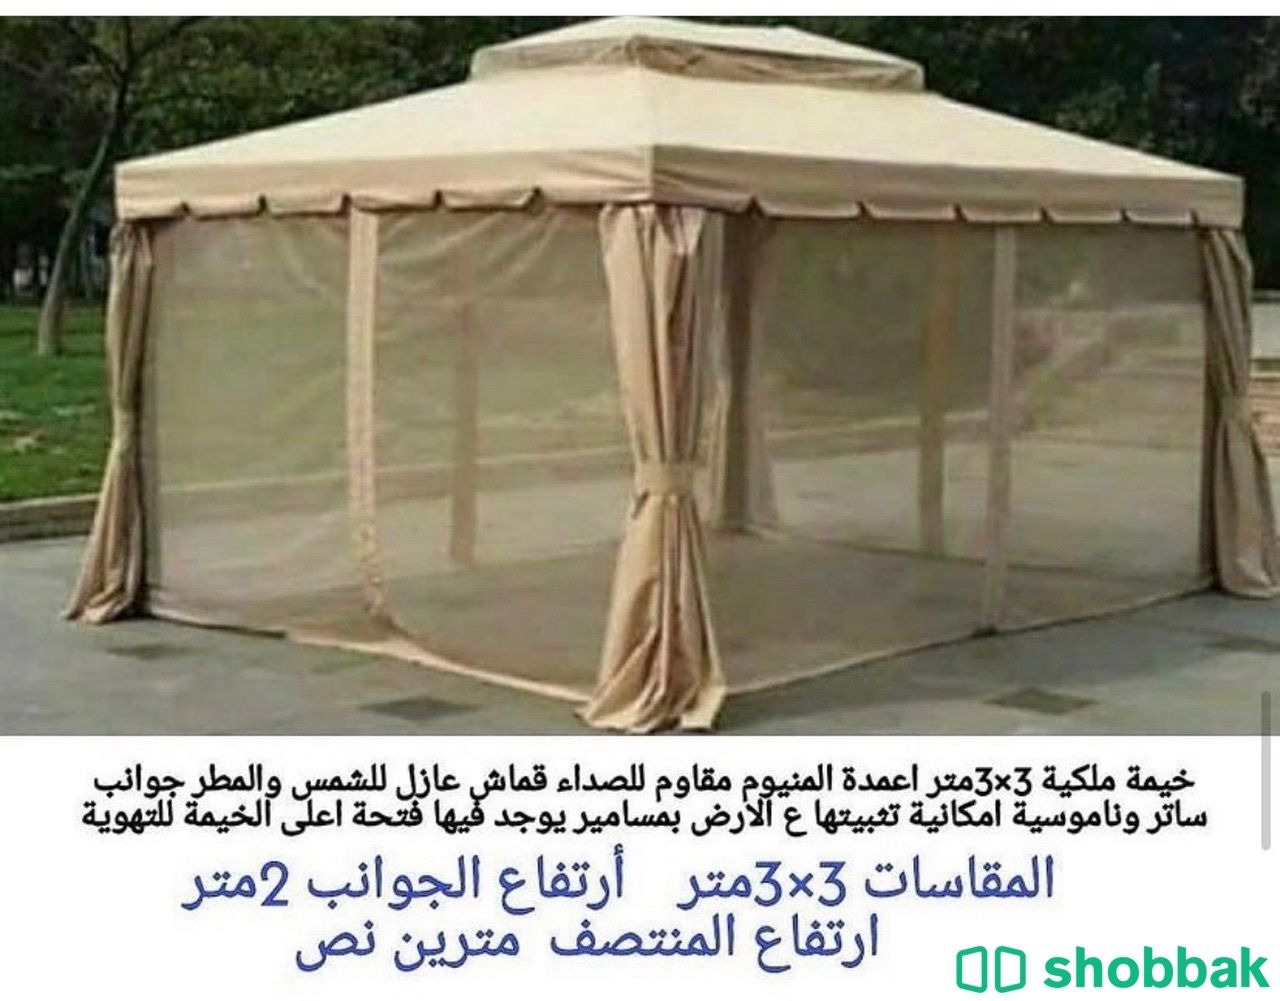 مظلات حدائق توجد عروض الشتاء  Shobbak Saudi Arabia